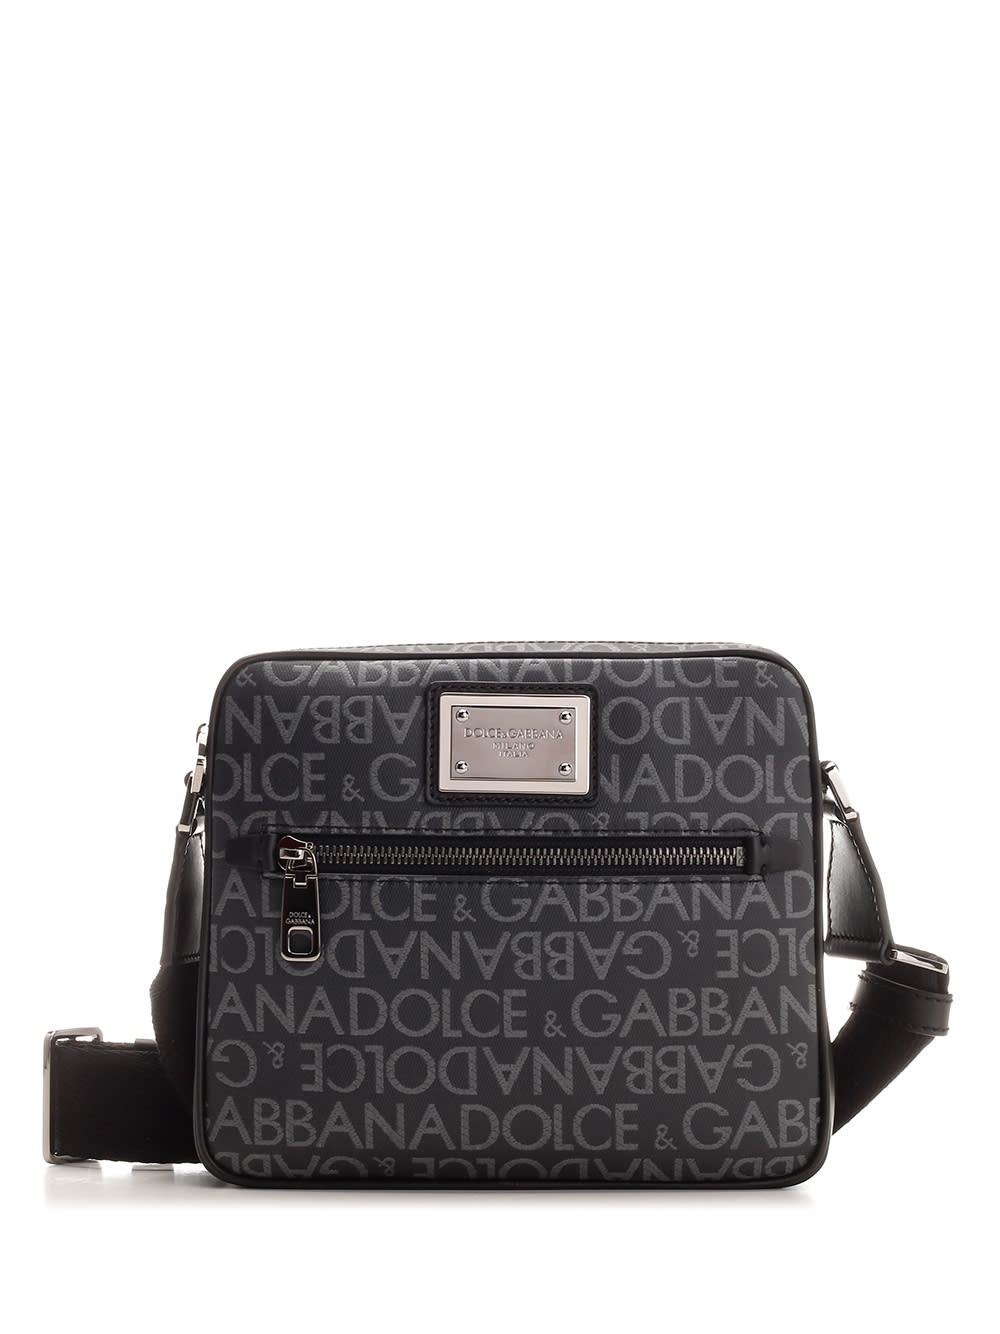 Dolce & Gabbana Small Messenger Bag